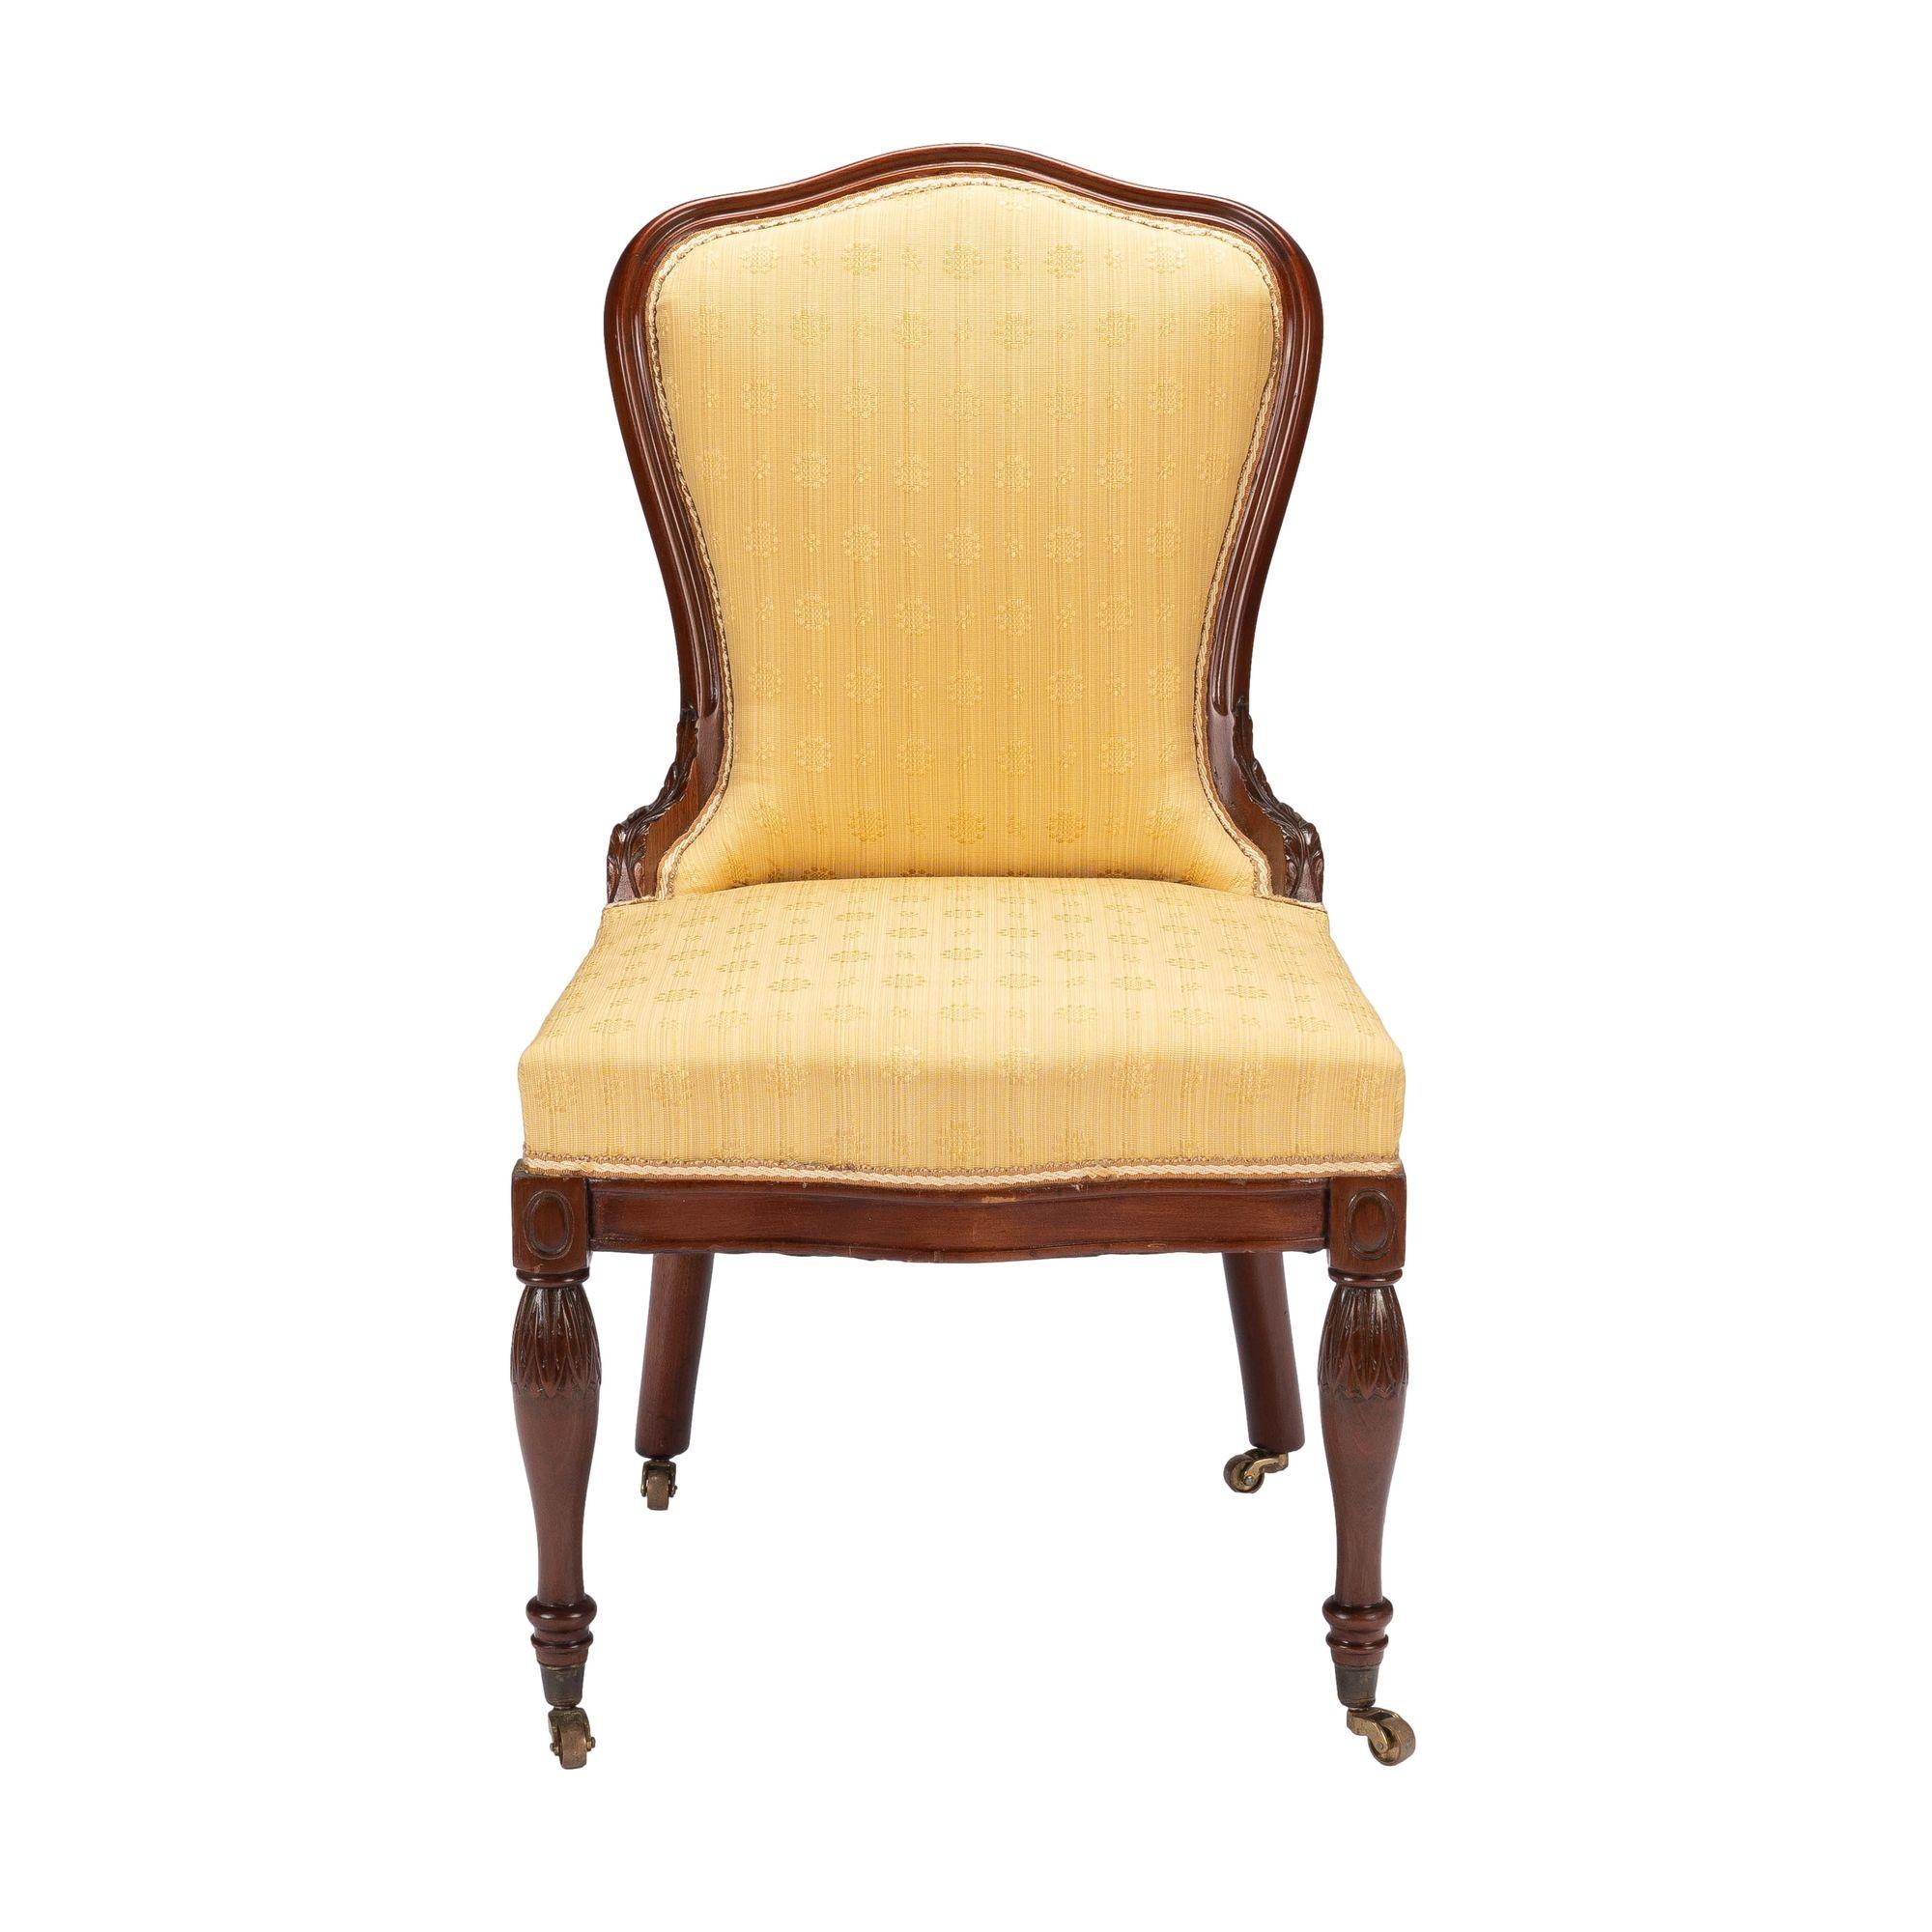 Baltimore Louis XVI Revival gepolstert Mahagoni Hausschuh Stuhl. Der Stuhl hat gedrechselte und geschnitzte Vorderbeine und abgeschrägte Hinterbeine. Alle Beine ruhen auf gegossenen Messing-Cup-Rollen. Der gepolsterte Kastensitz ist an einem